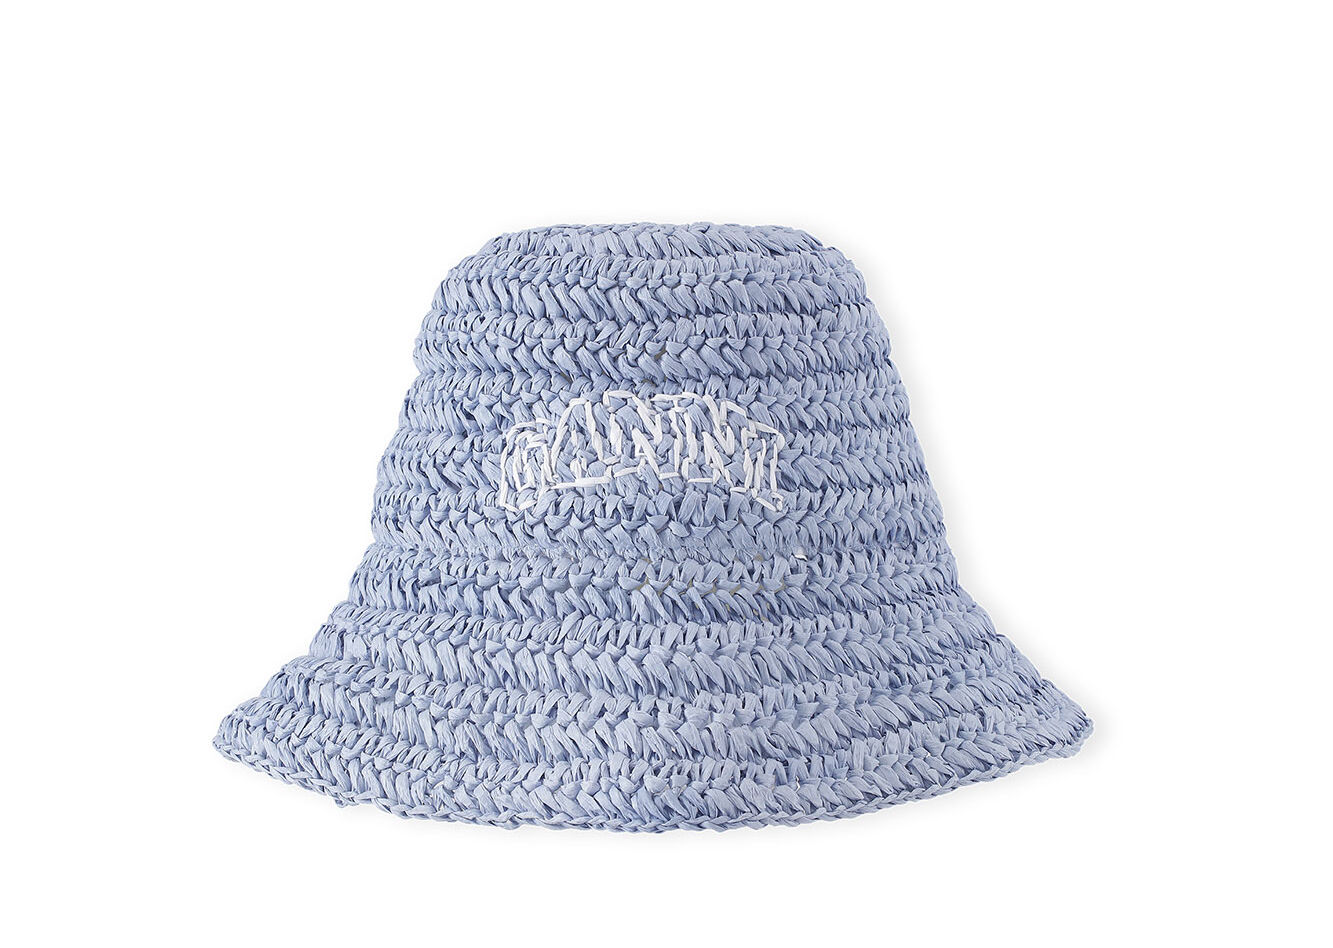 Blue Summer Straw hatt, Paper, in colour Baby Blue - 1 - GANNI